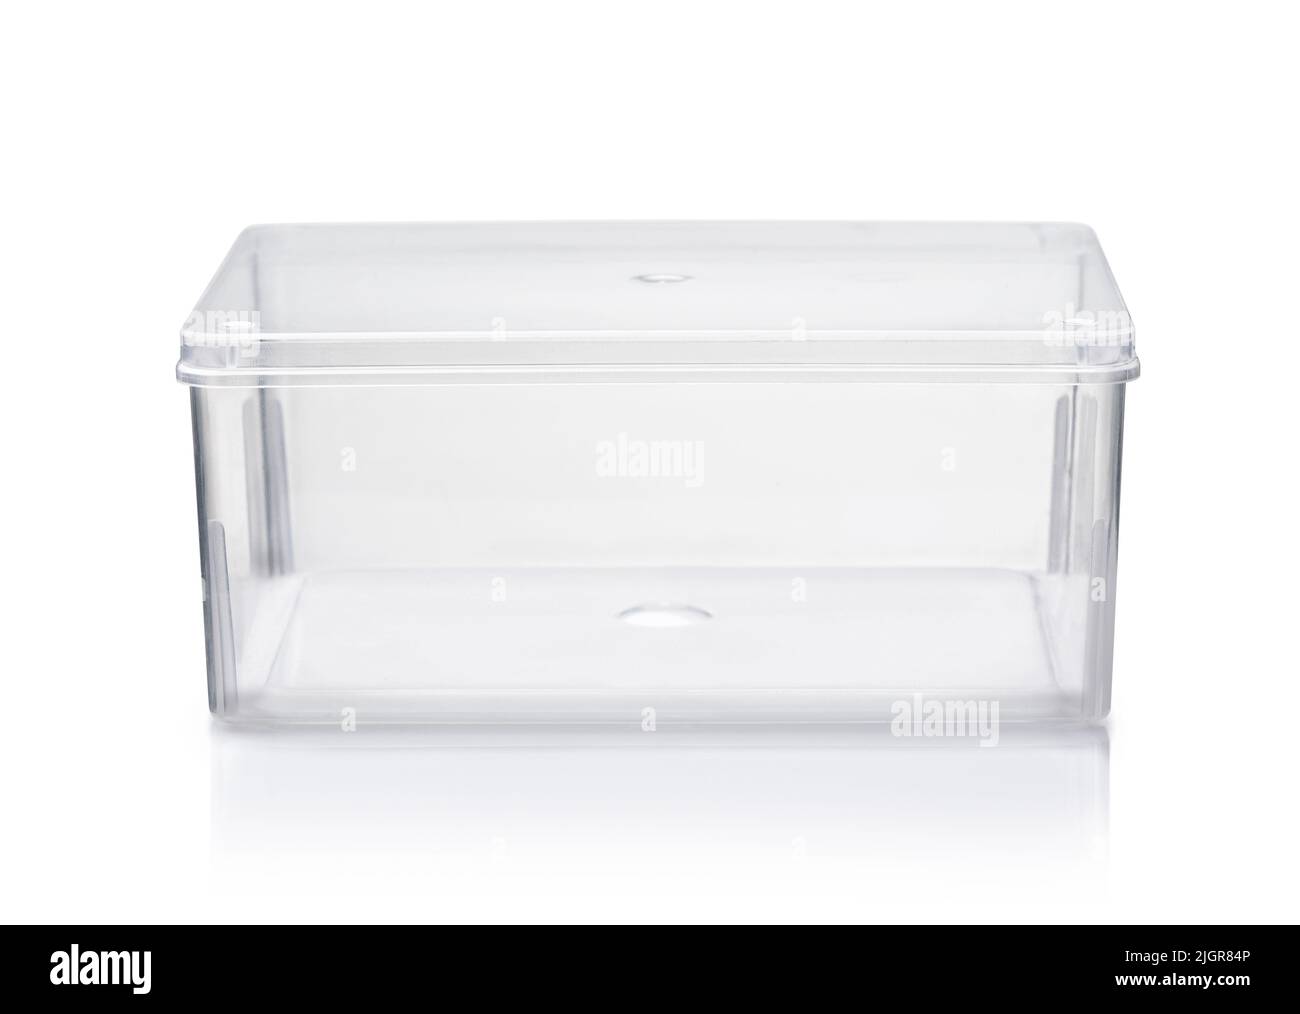 Vista frontal de la caja de plástico transparente vacía aislada sobre blanco Foto de stock